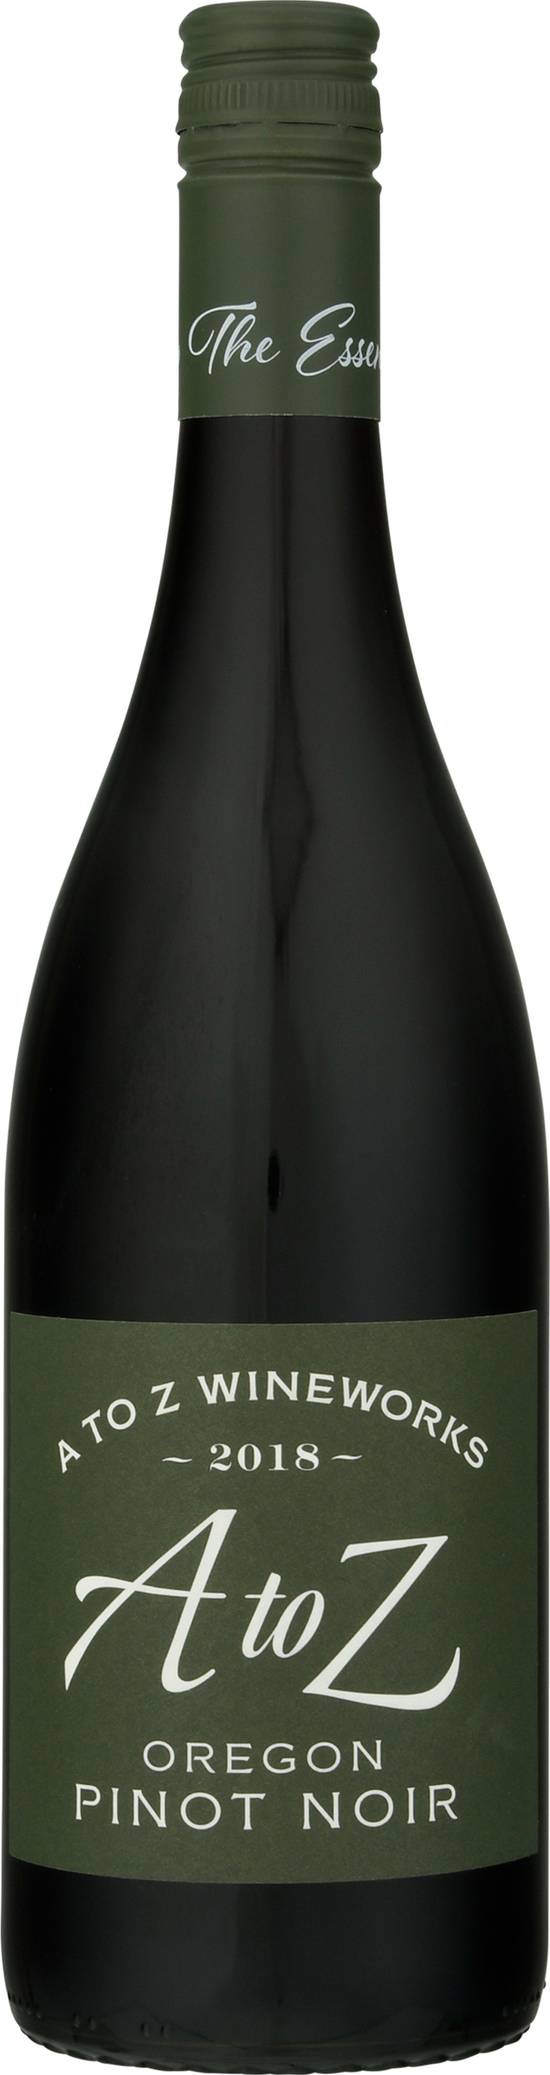 A To Z Wineworks Oregon Pinot Noir Wine (750 ml)